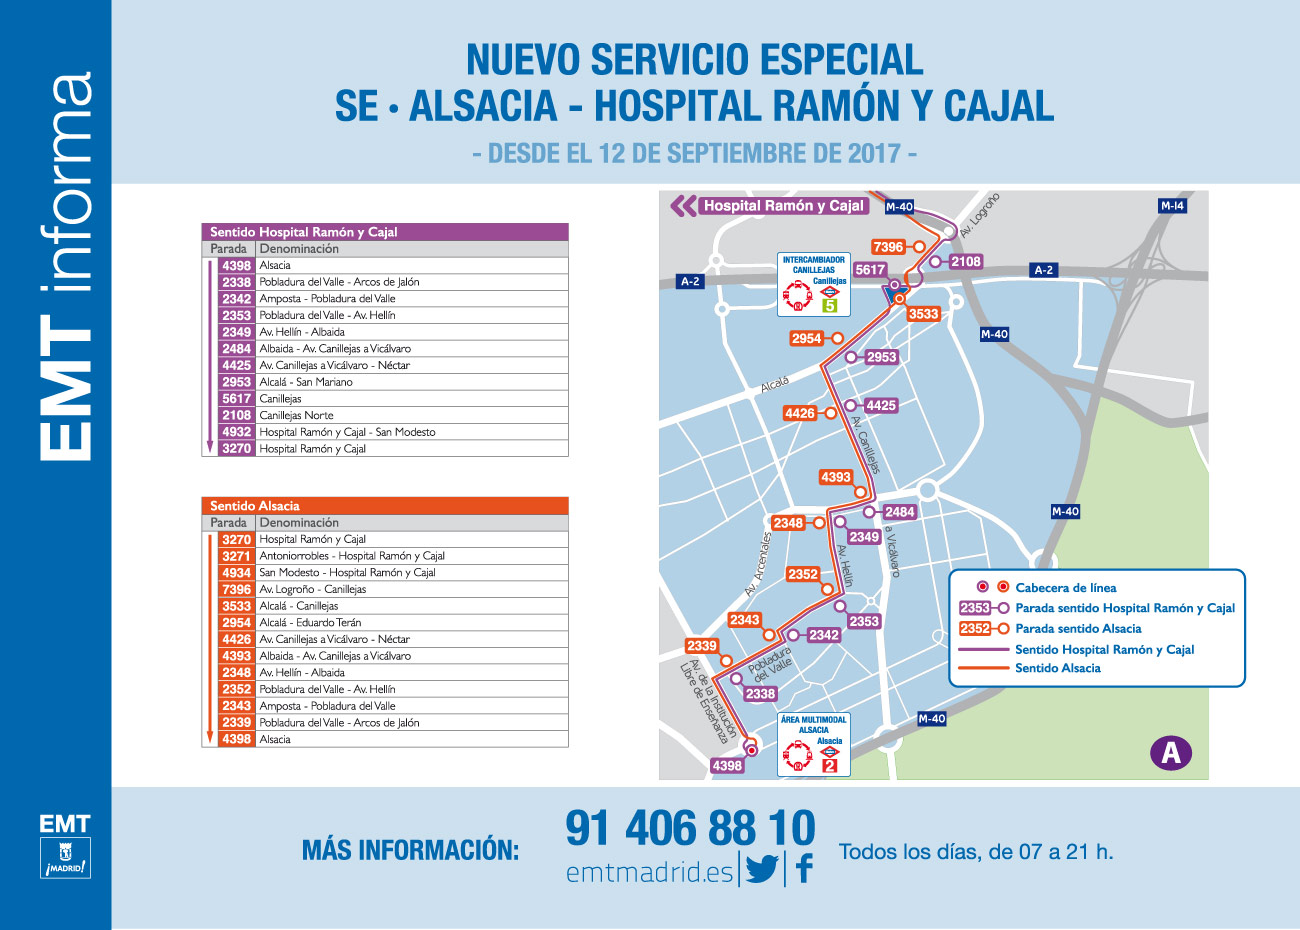 EMT Nuevo Servicio: Alsacia - Ramón y Cajal